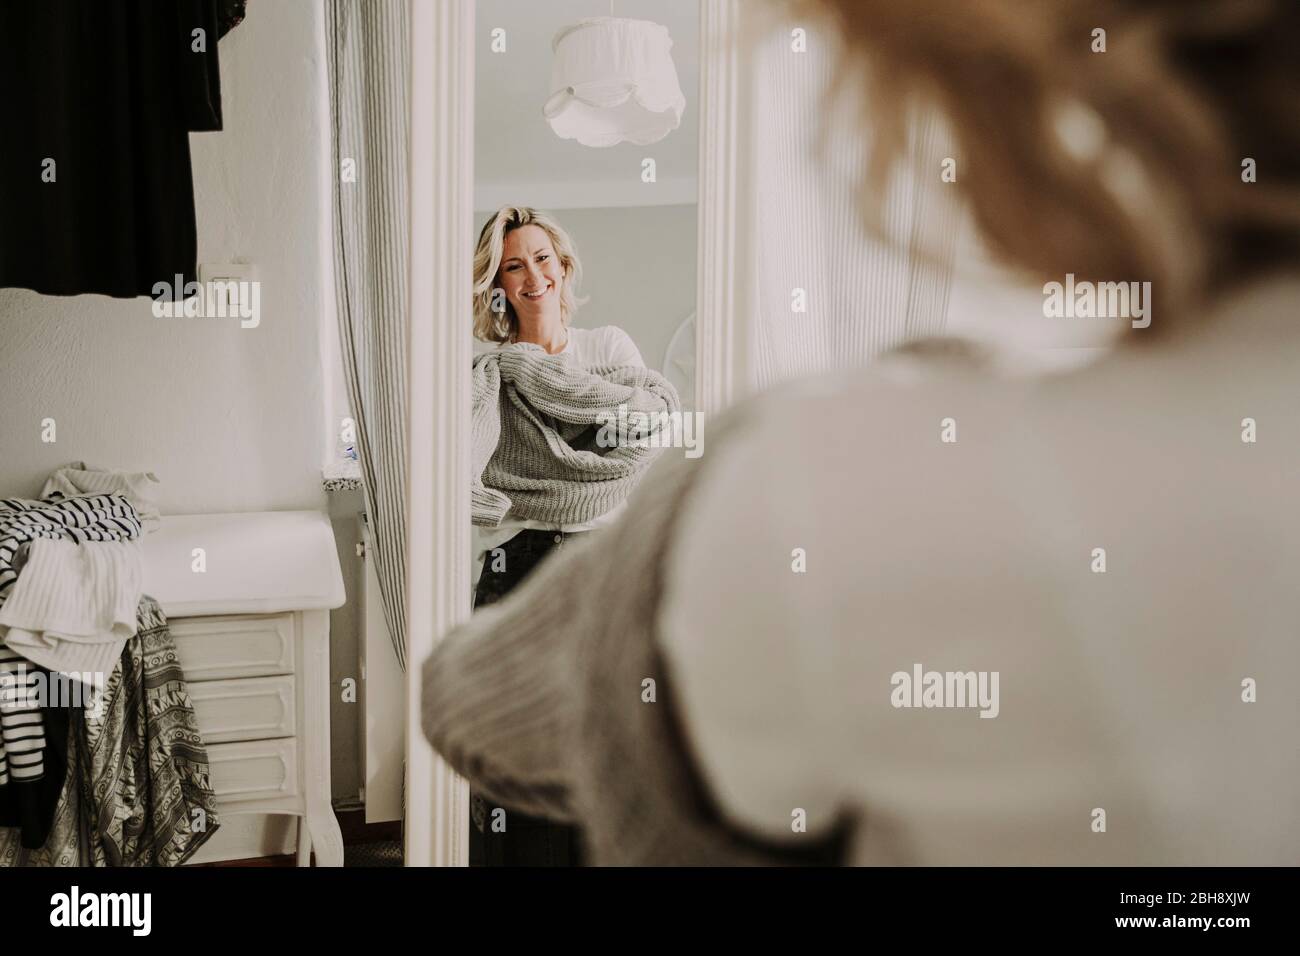 Frau steht vor dem Spiegel, kleidet sich an Stock Photo